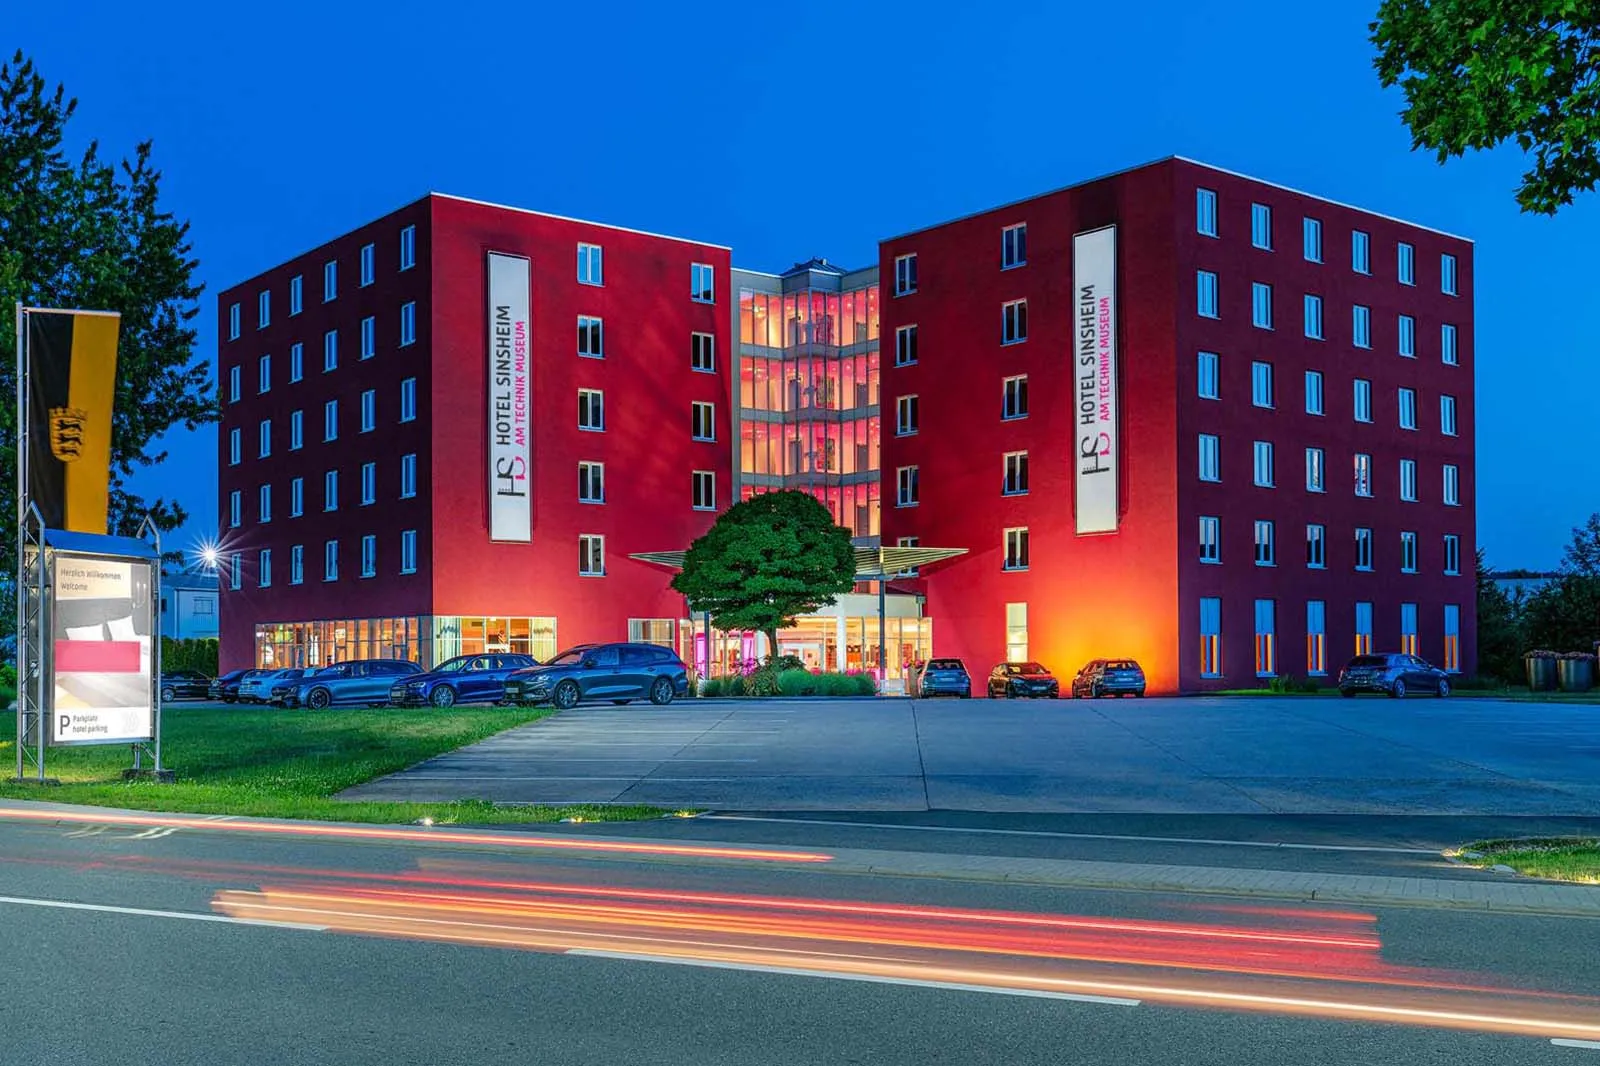 Building hotel Hotel Sinsheim